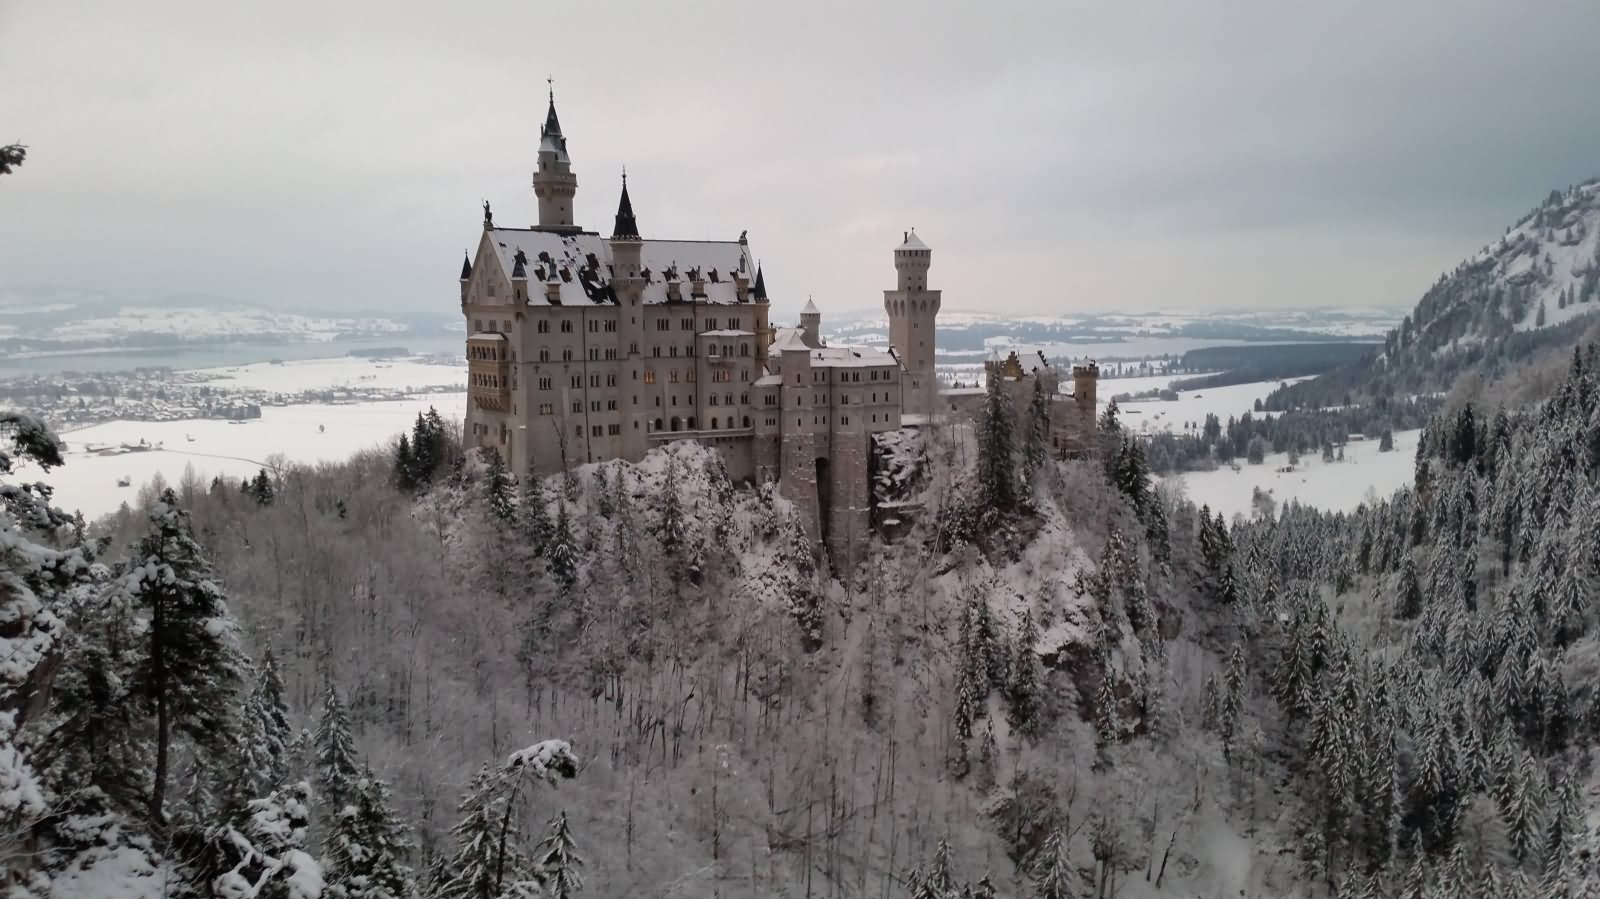 The Neuschwanstein Castle During Winters